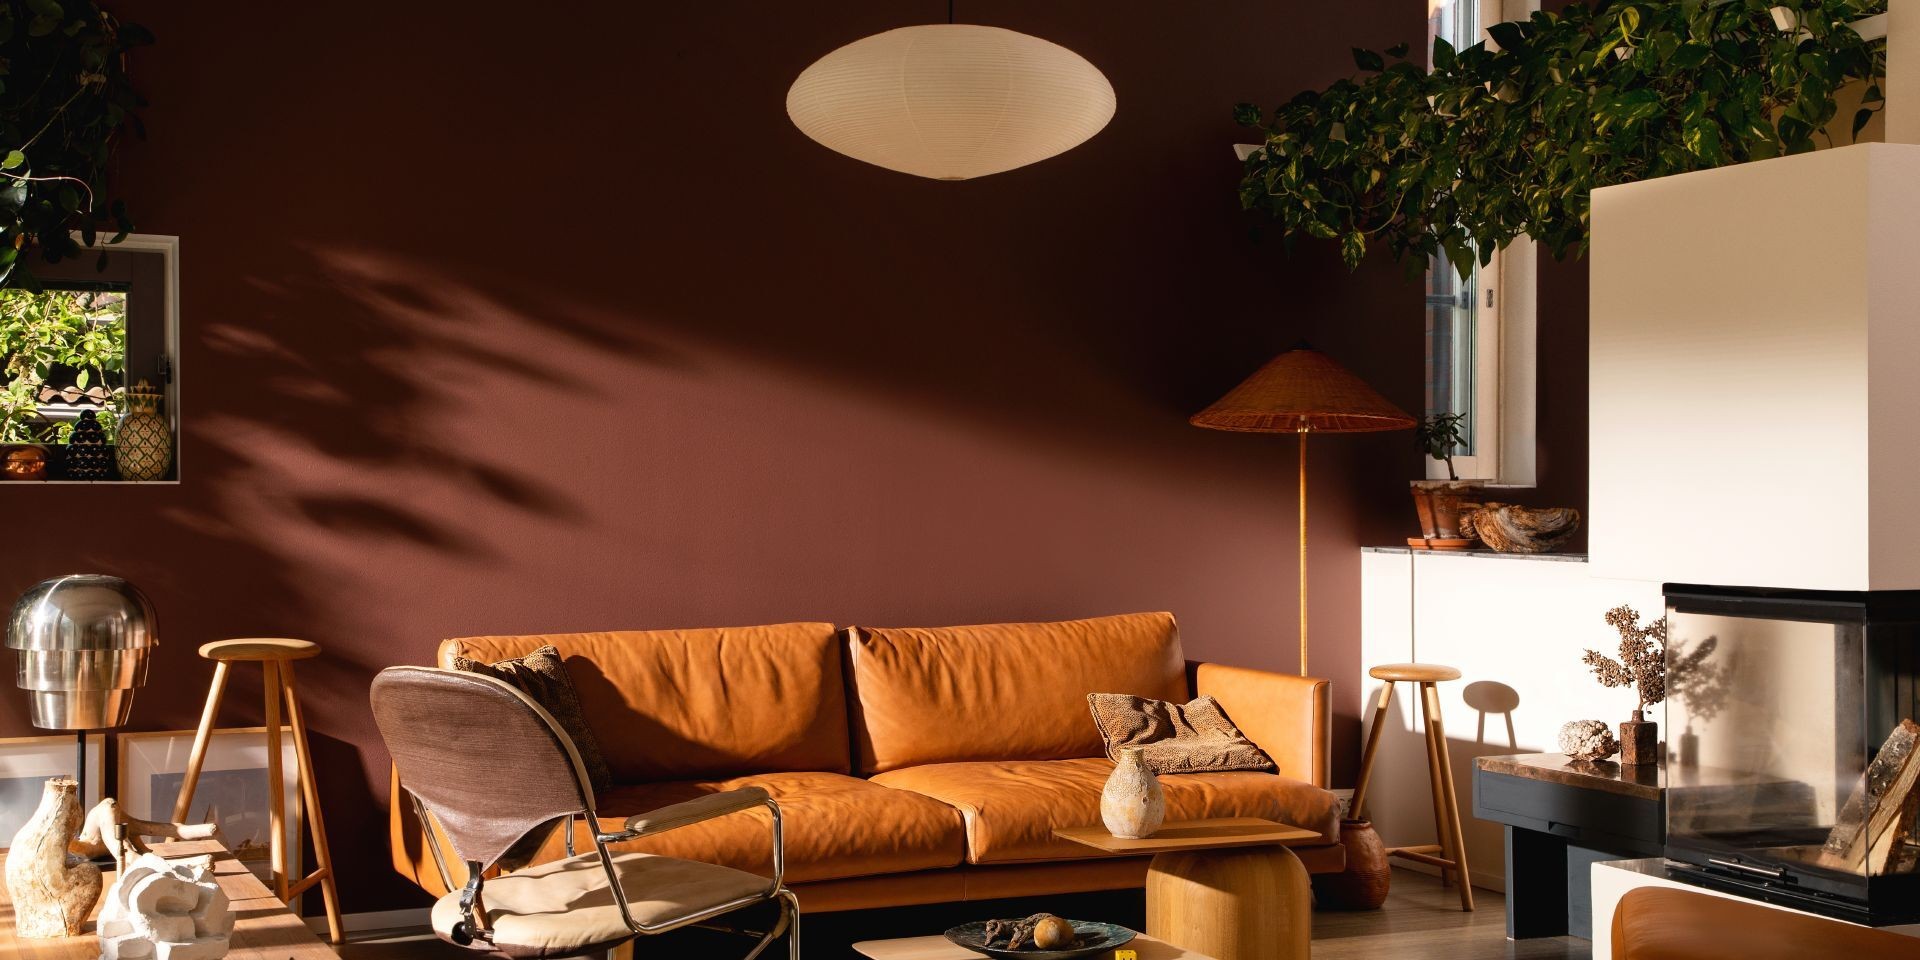  przytulny salon ze ścianą w kolorze ziemistego brązu i skórzaną sofą w odcieniu ciepłego brązu